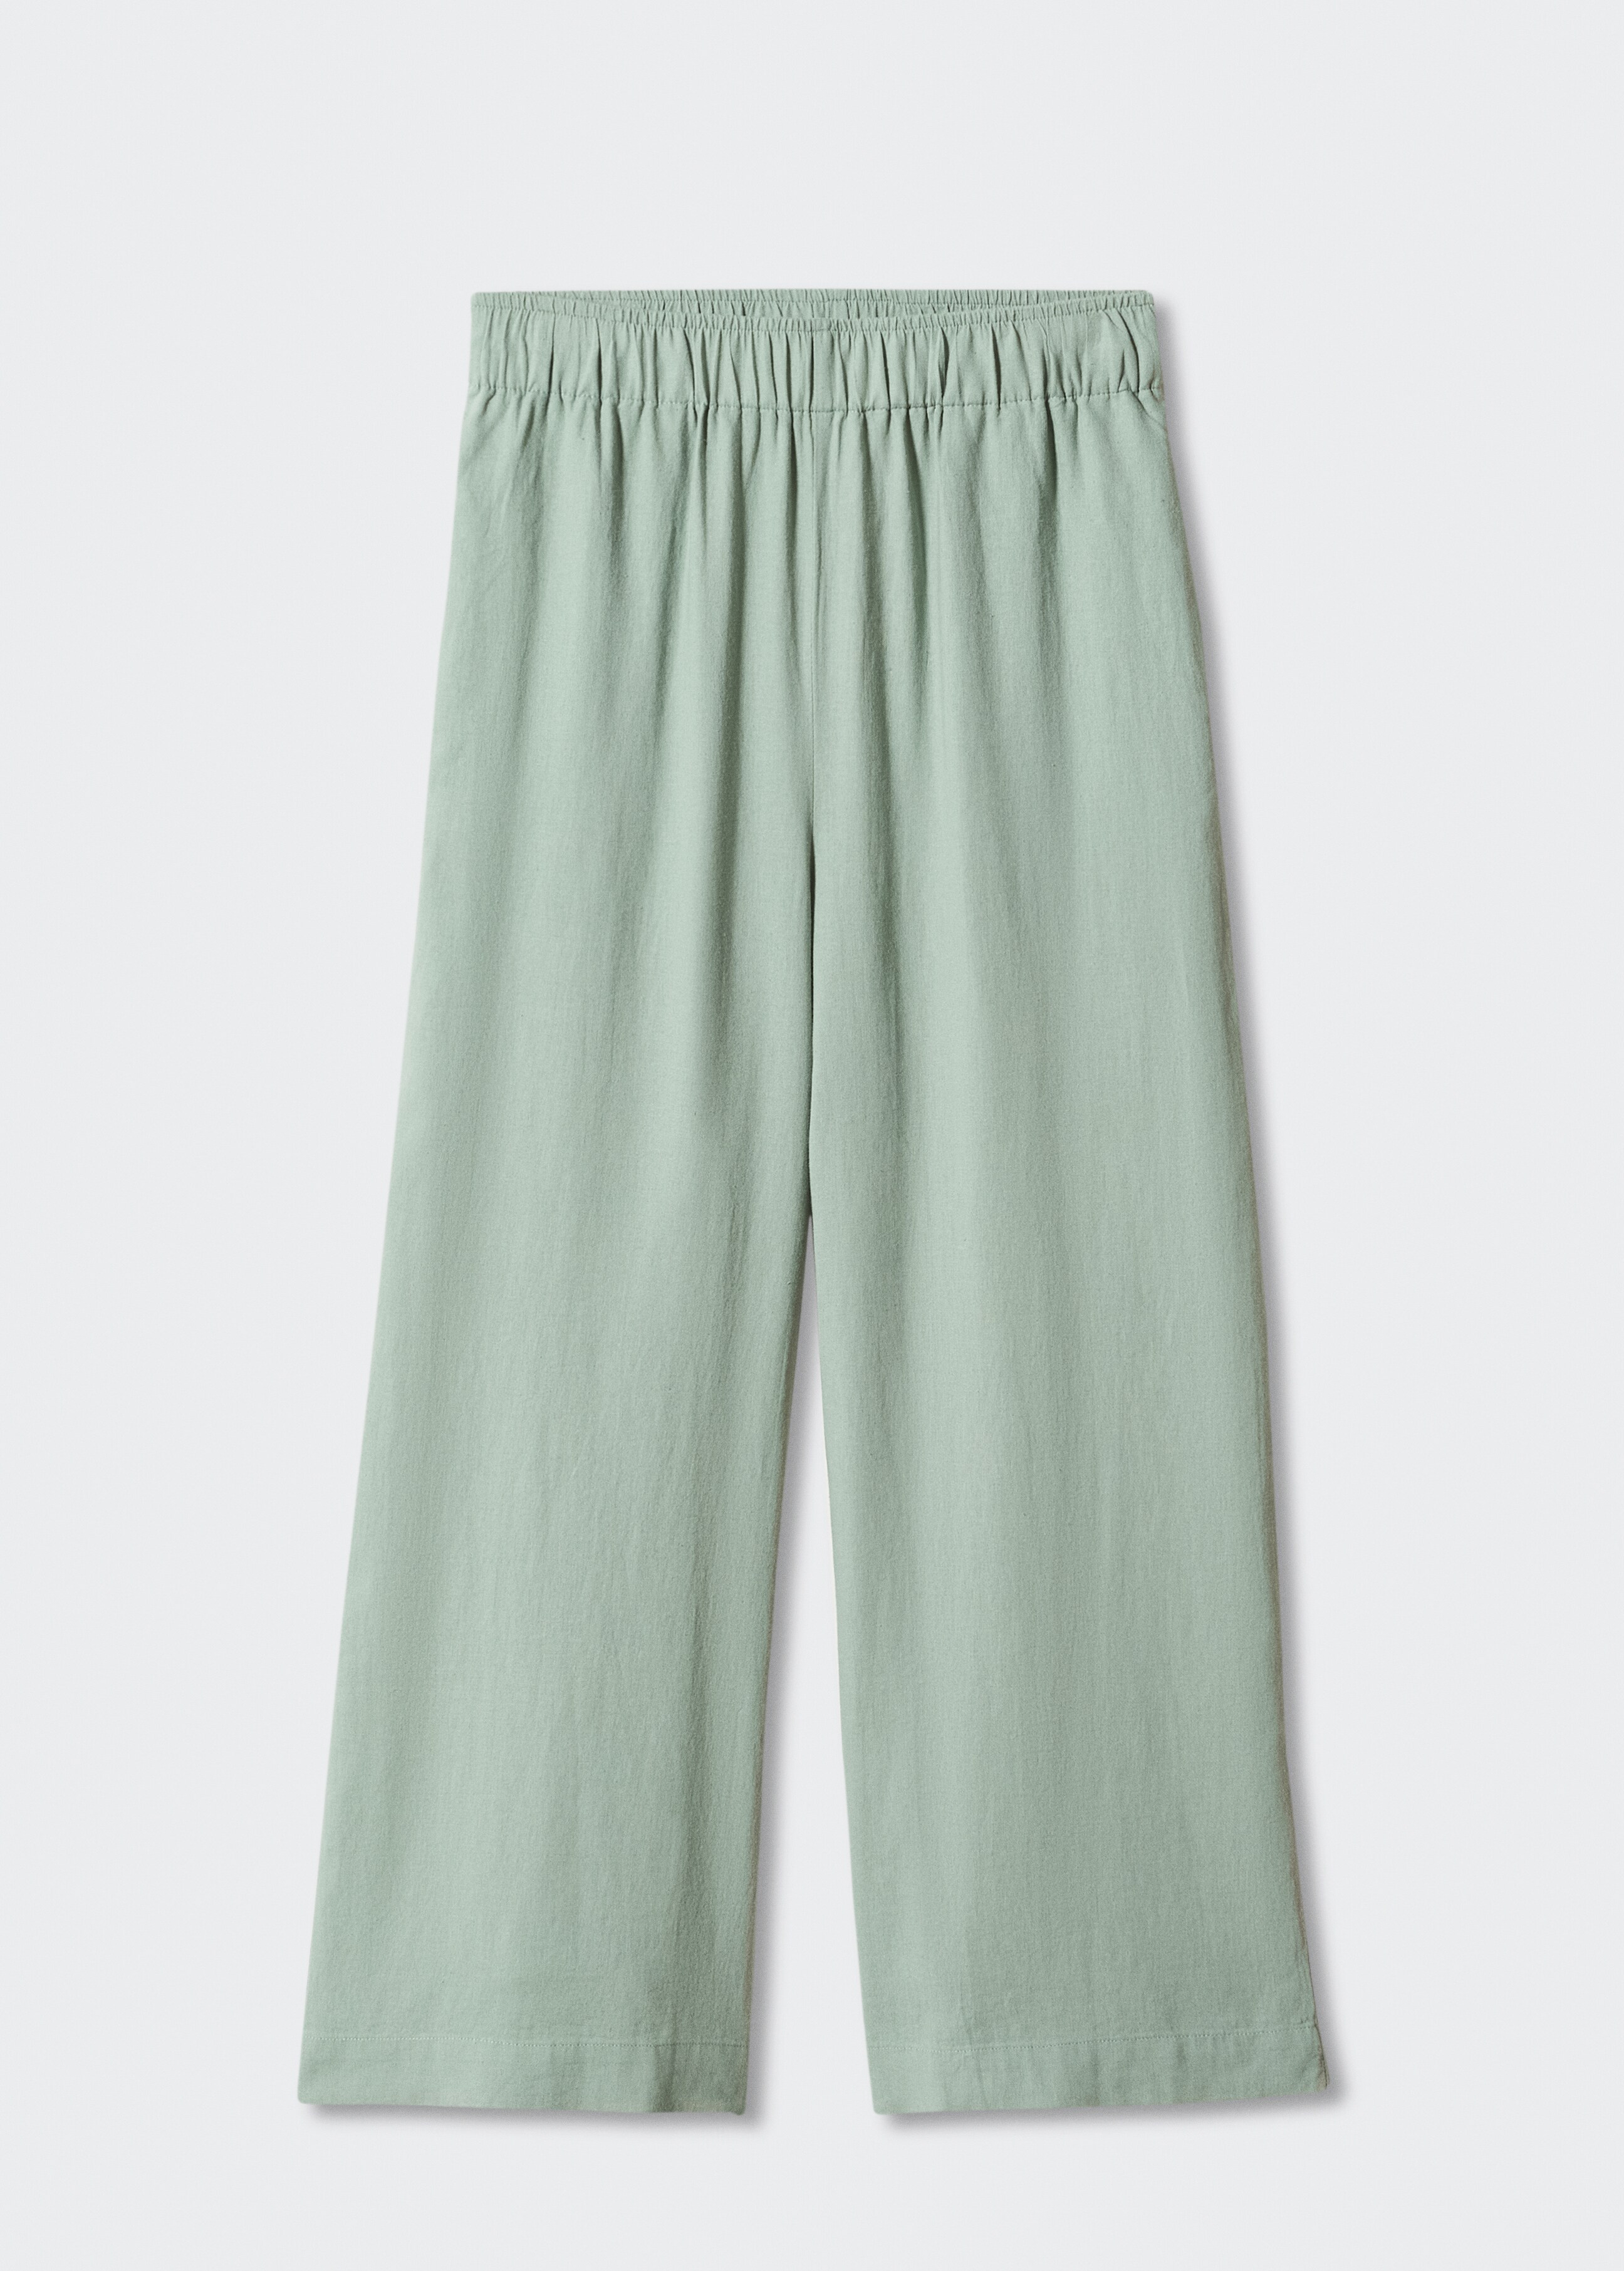 Pantalón culotte lino - Artículo sin modelo